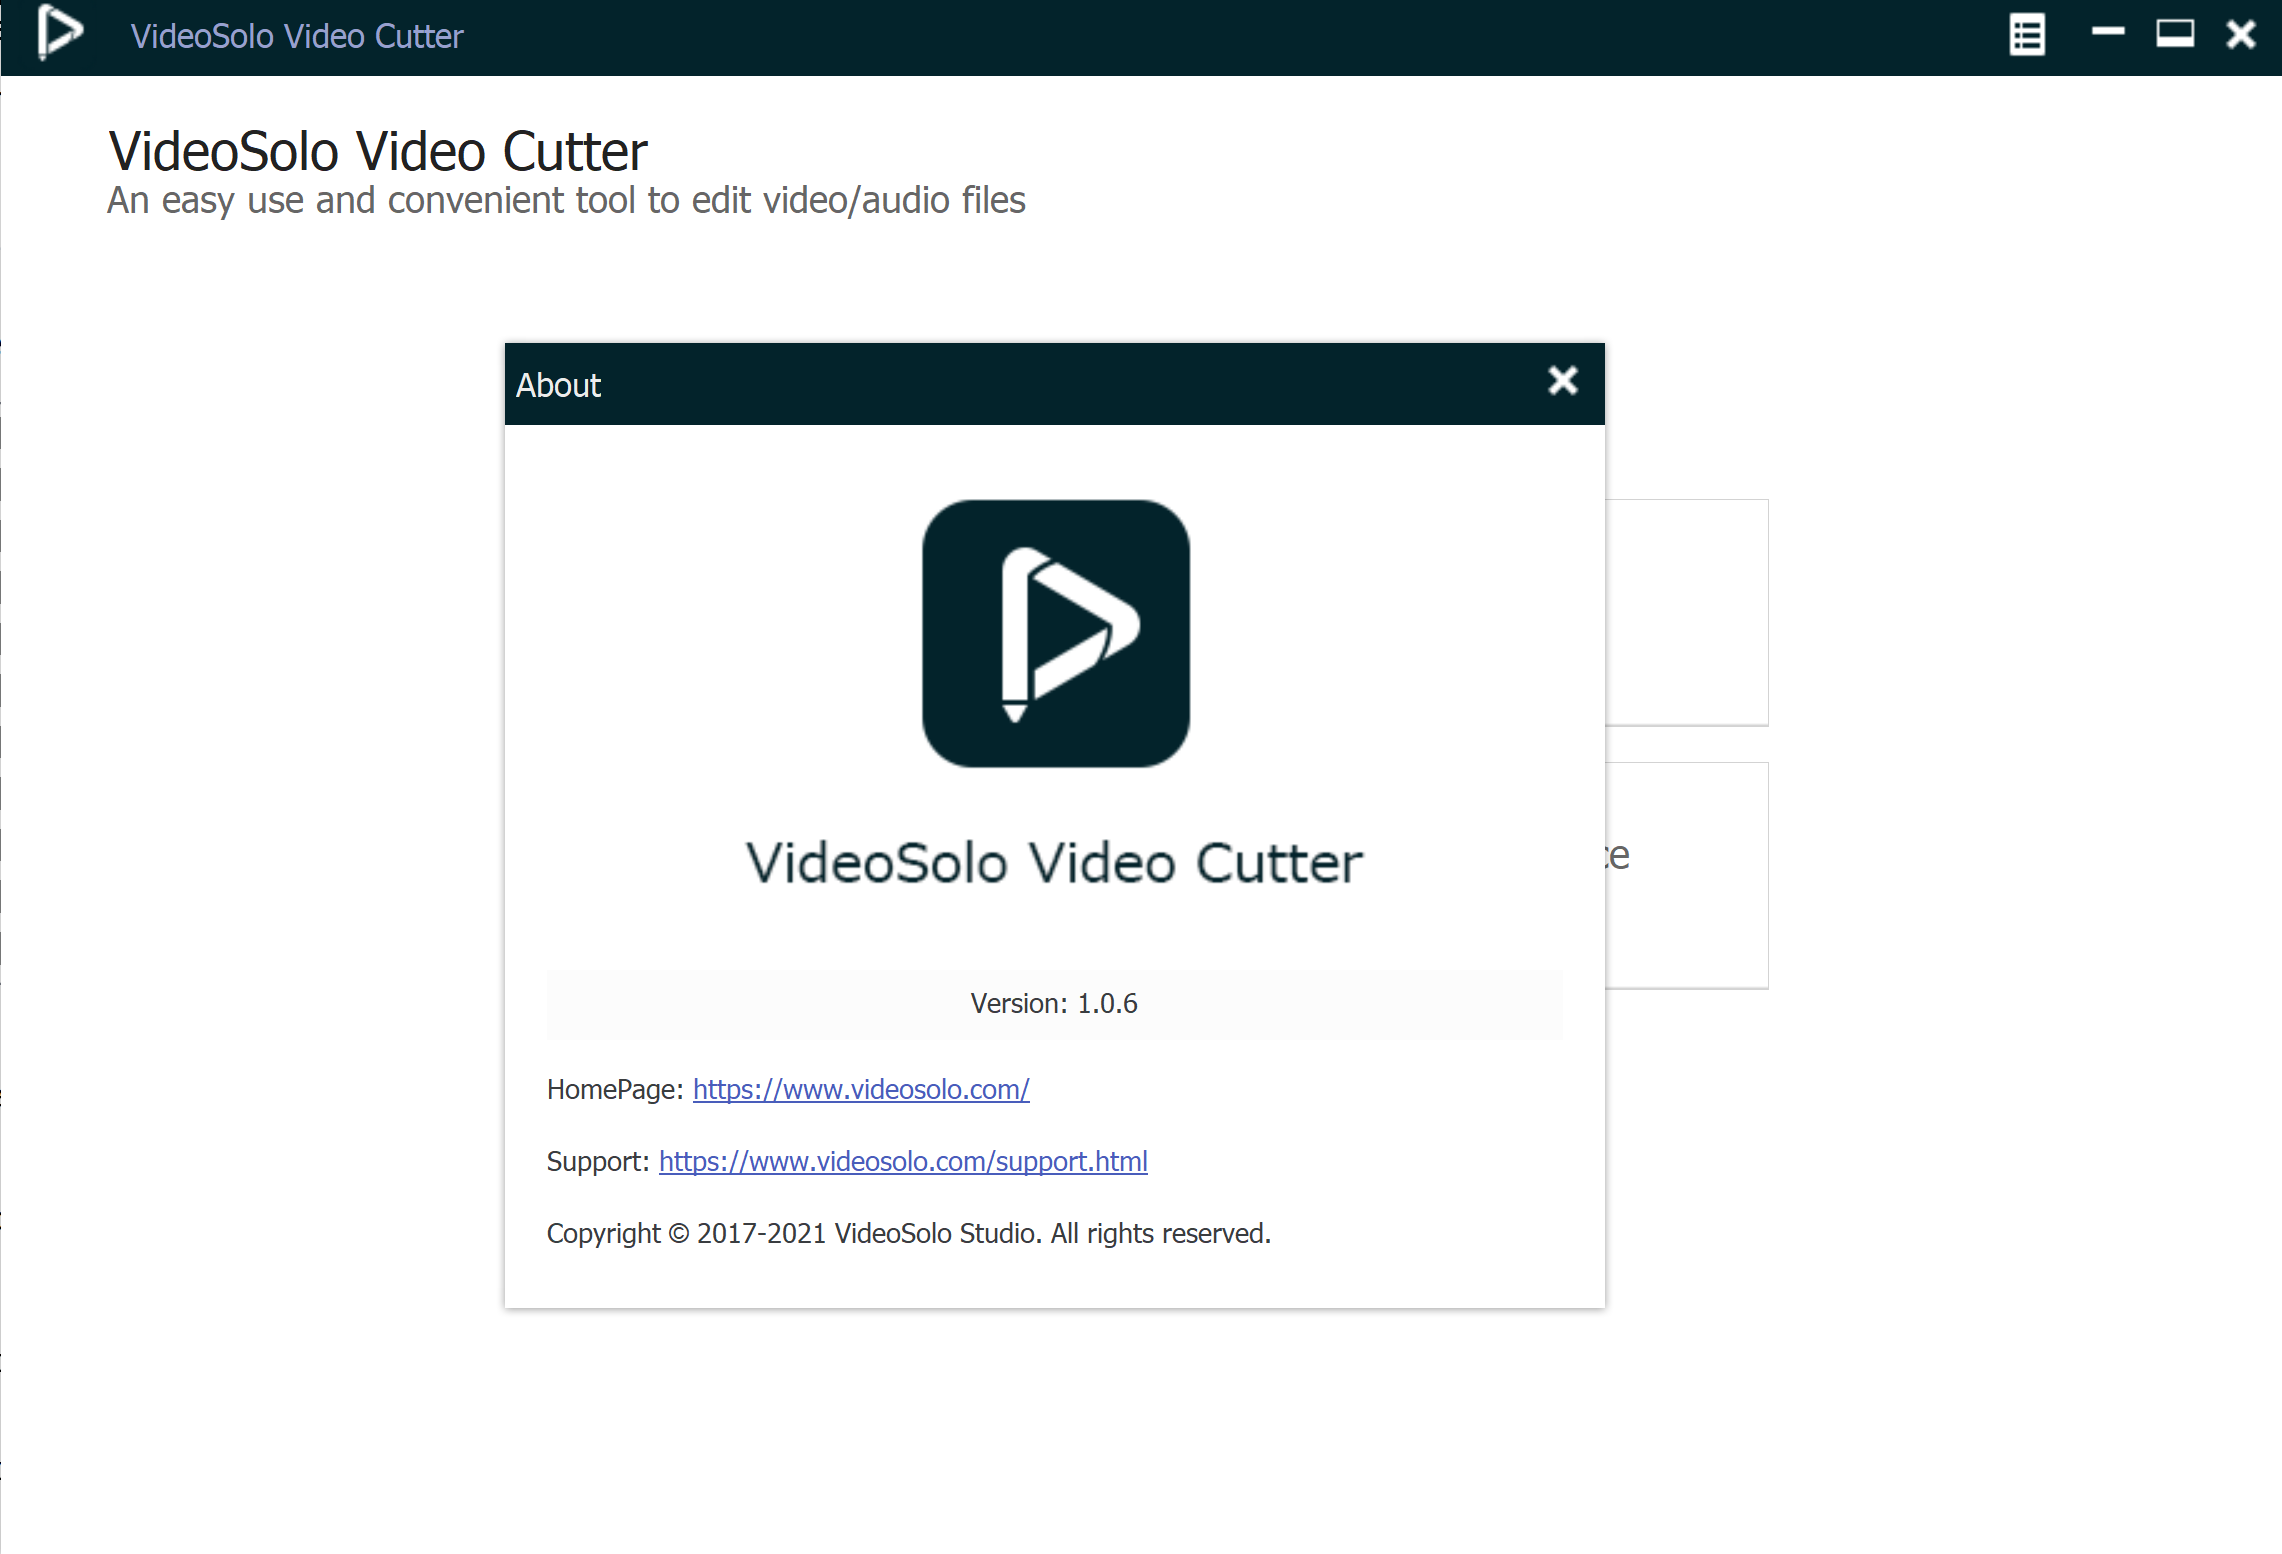 VideoSolo Video Cutter 1.0.6